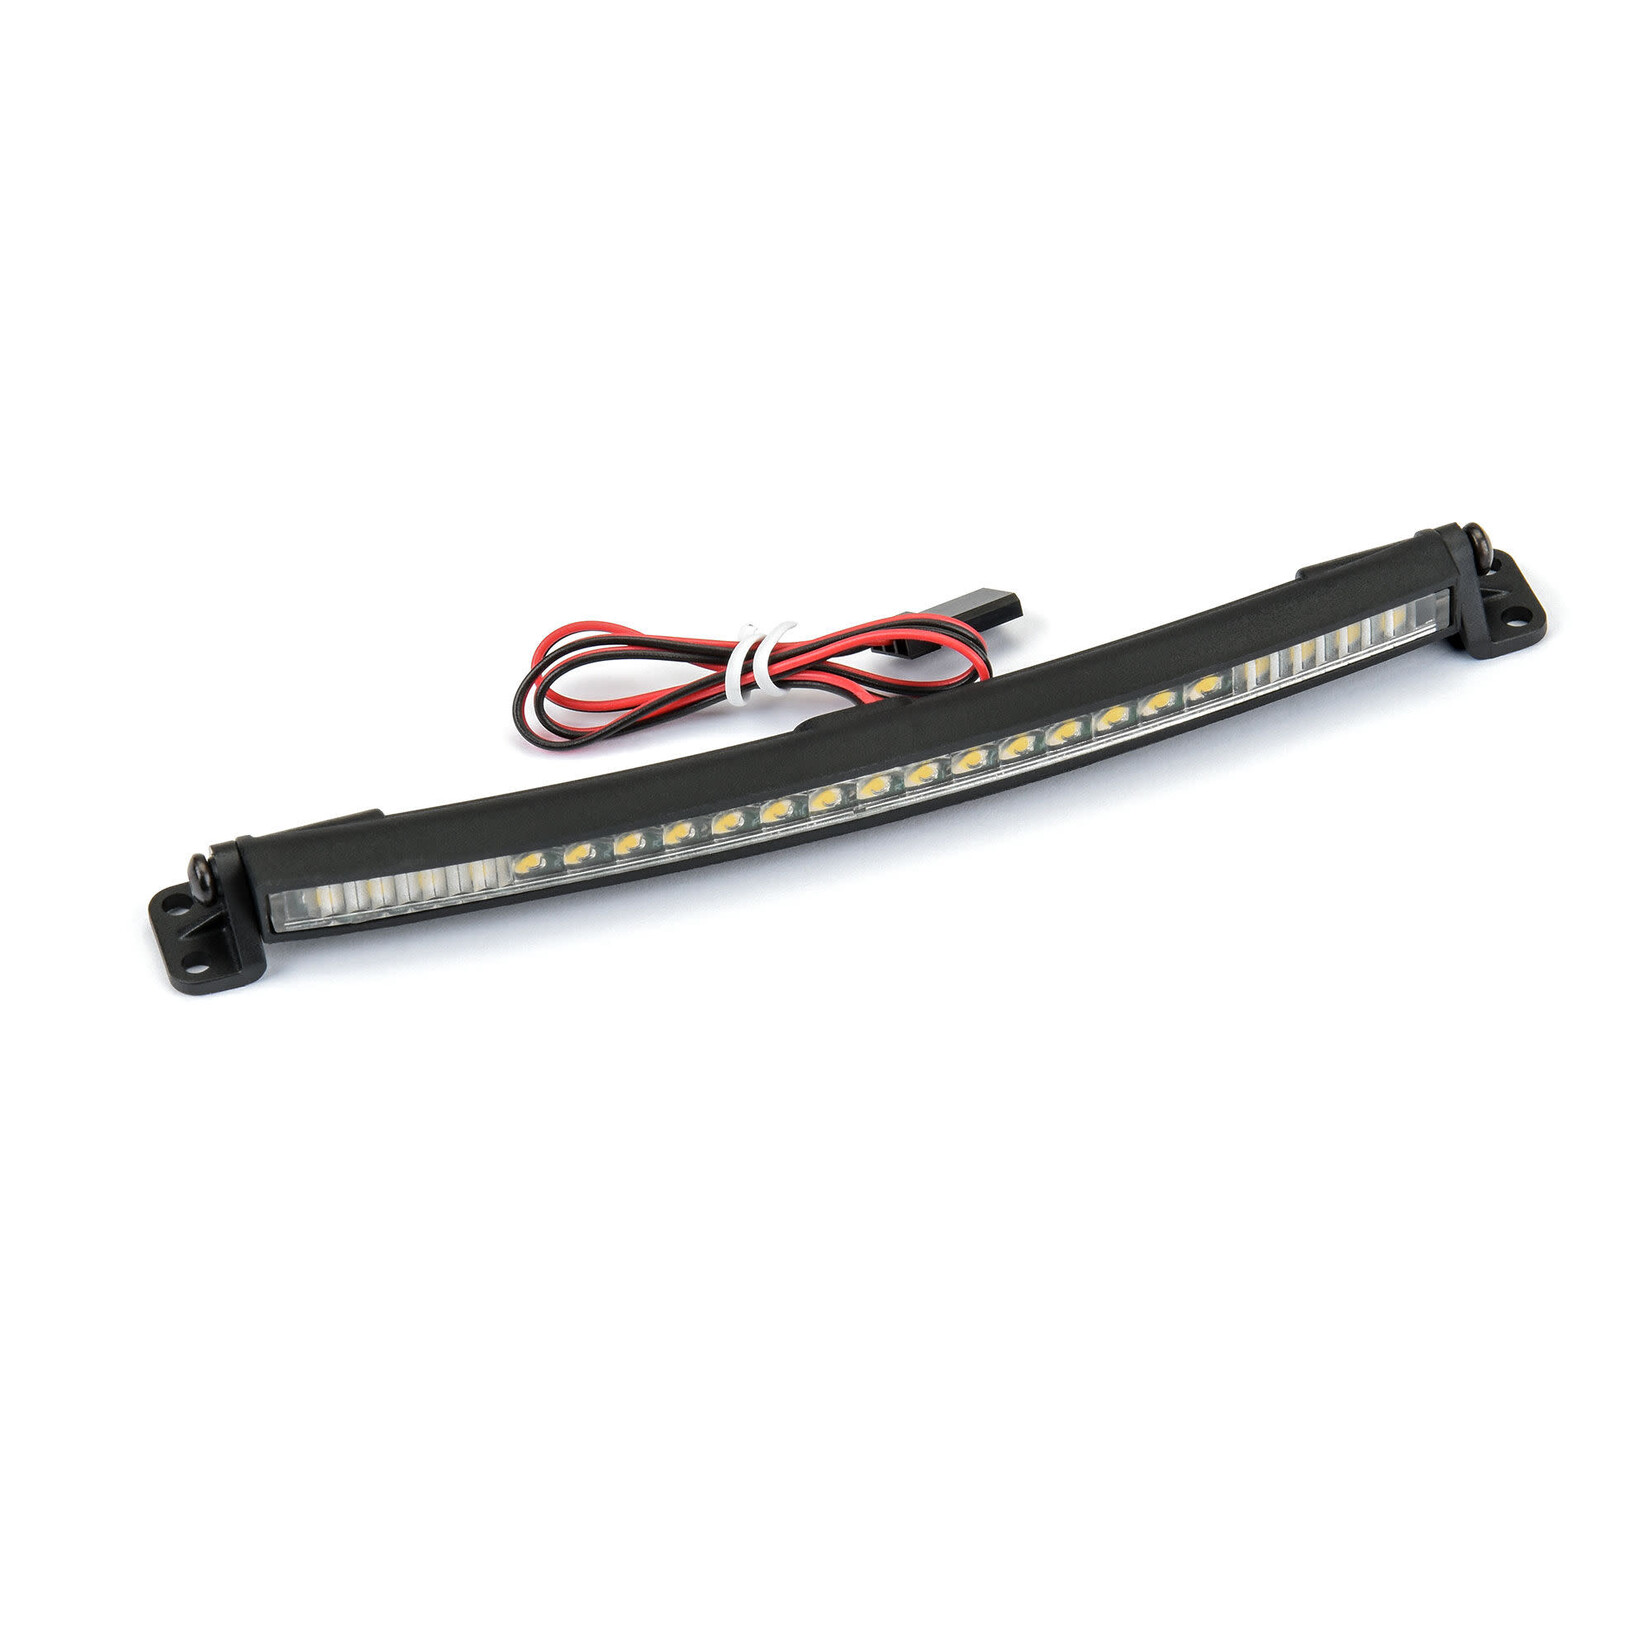 Pro-Line Pro-Line 5" Ultra-Slim LED Light Bar Kit 5V-12V (Curved) #6352-02